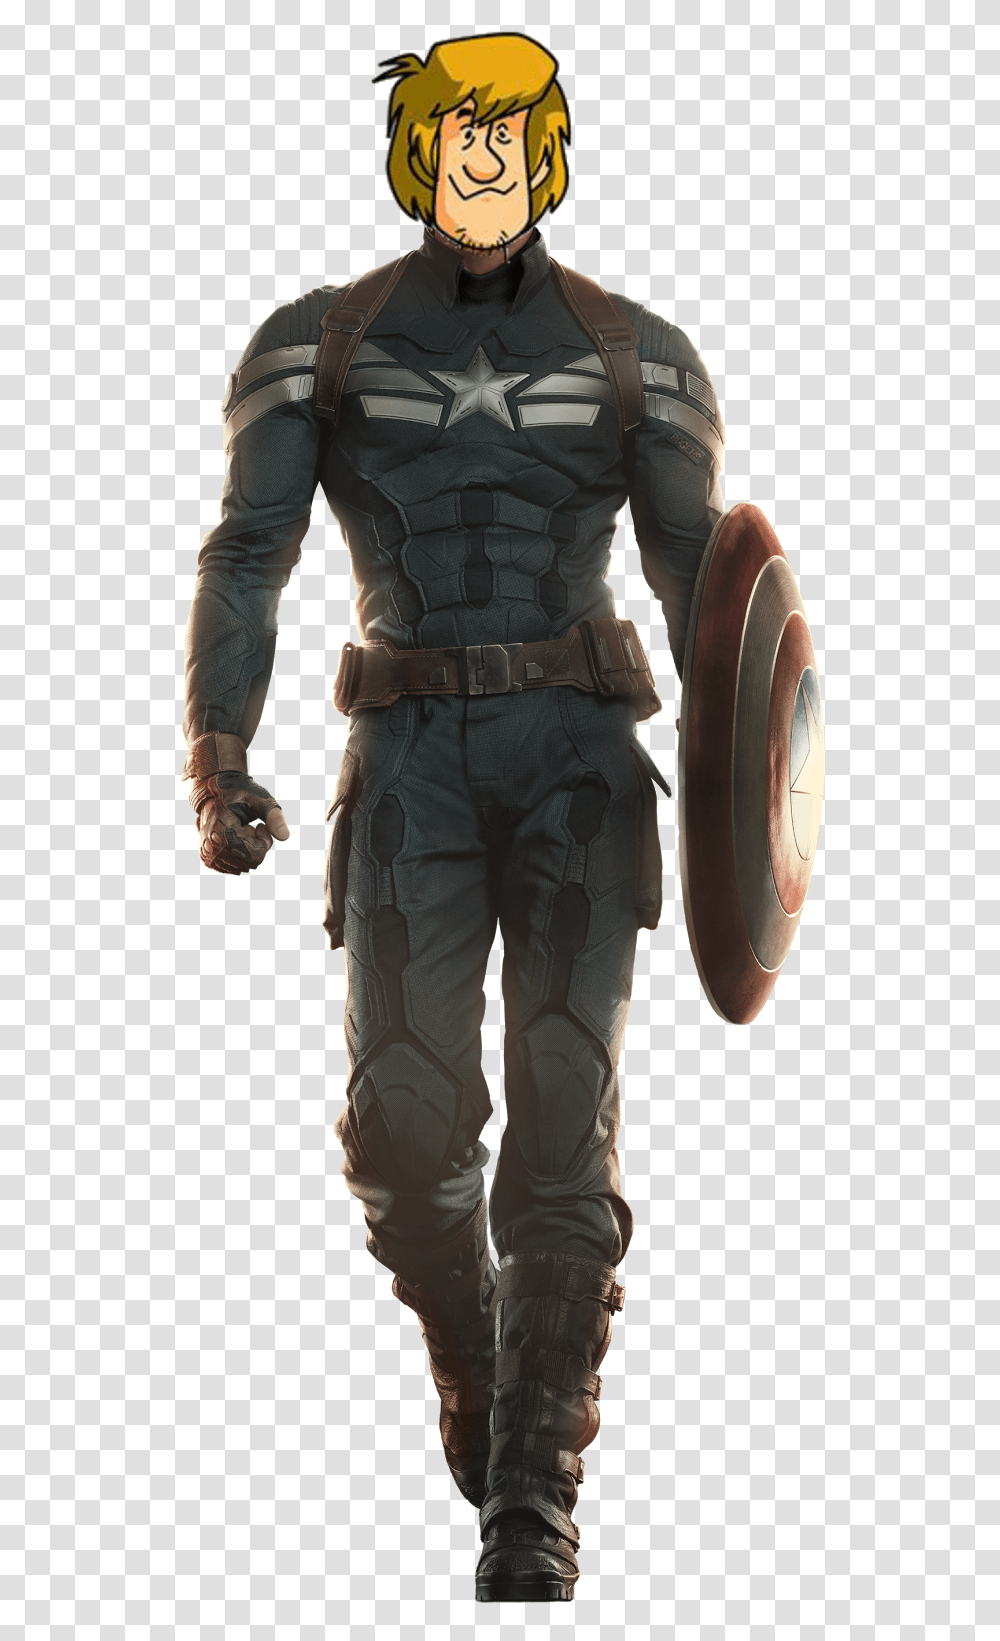 Chris Evans Captain America Winter Soldier, Person, Human, Armor, Helmet Transparent Png